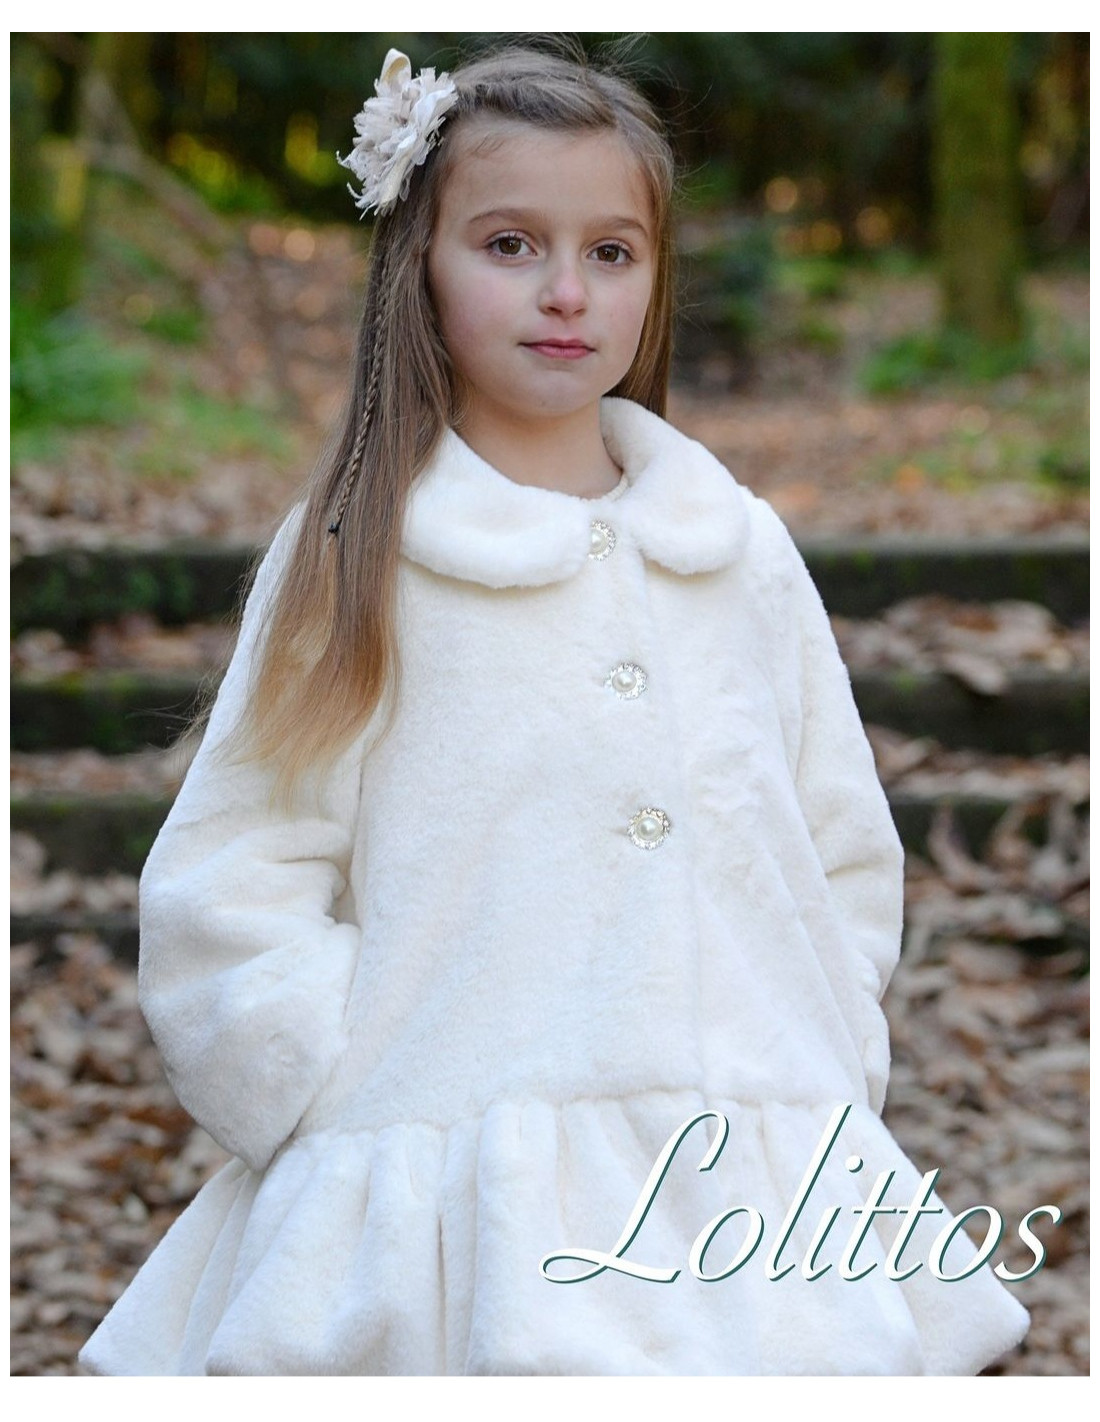 Salnés Click • Abrigo niña talla 10 años de la marca Lolittos